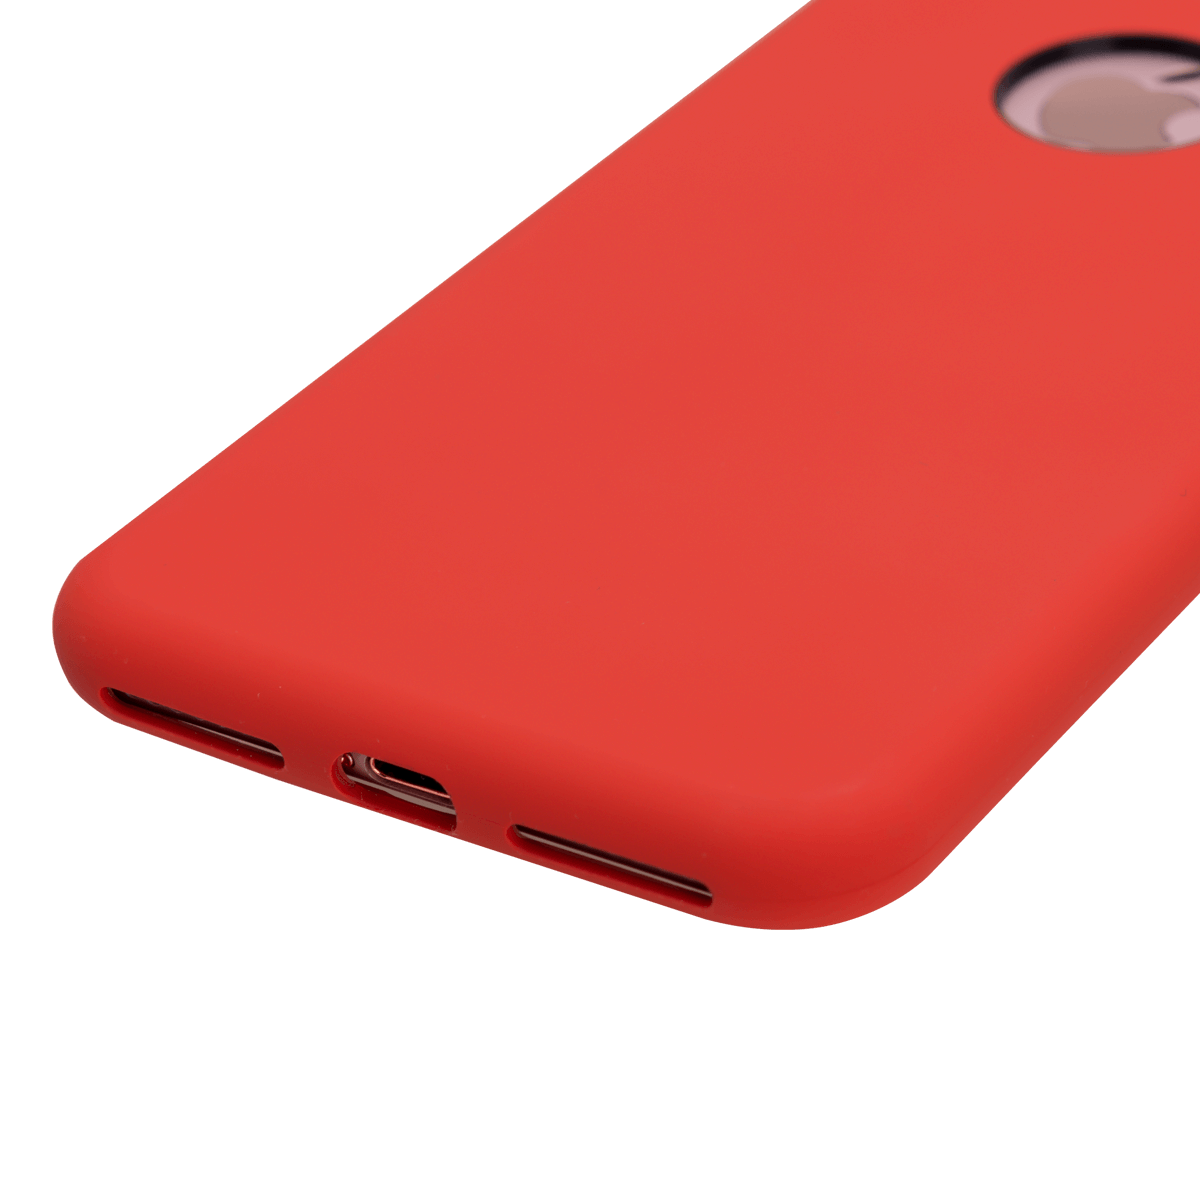 iPhone 7/8 Plus için spada Liquid Silikon Kırmızı renkli kapak